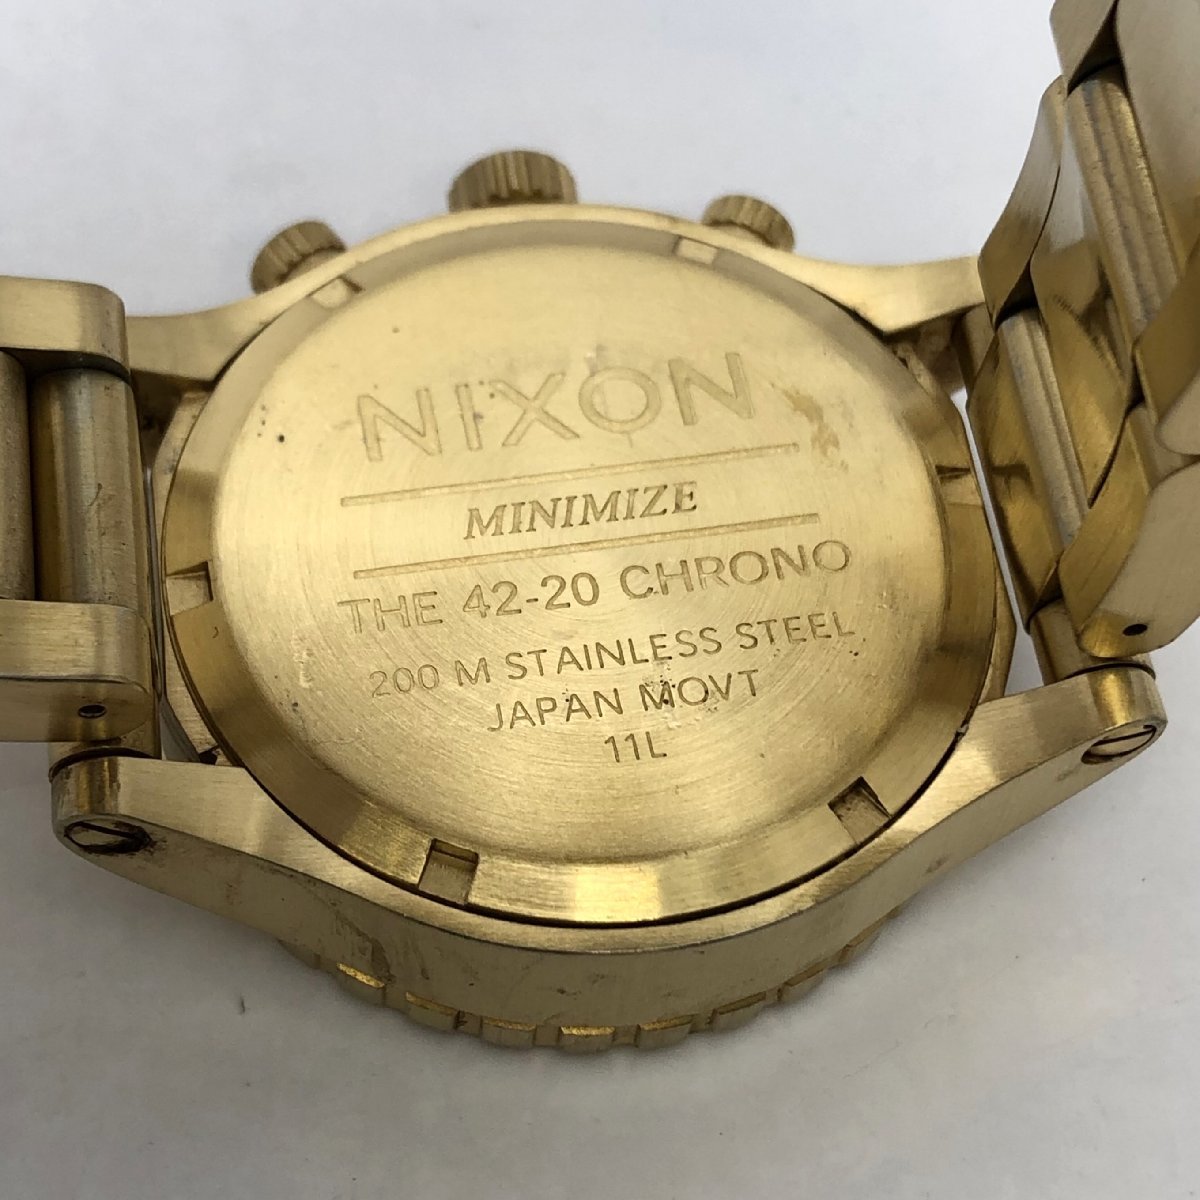 NIXON/ニクソン/MINIMIZE/THE 42-20/CHRONO/クロノ/デイト/ゴールドカラー/ラウンド/200M/クォーツ/メンズ腕時計/ジャンク/T136_画像8